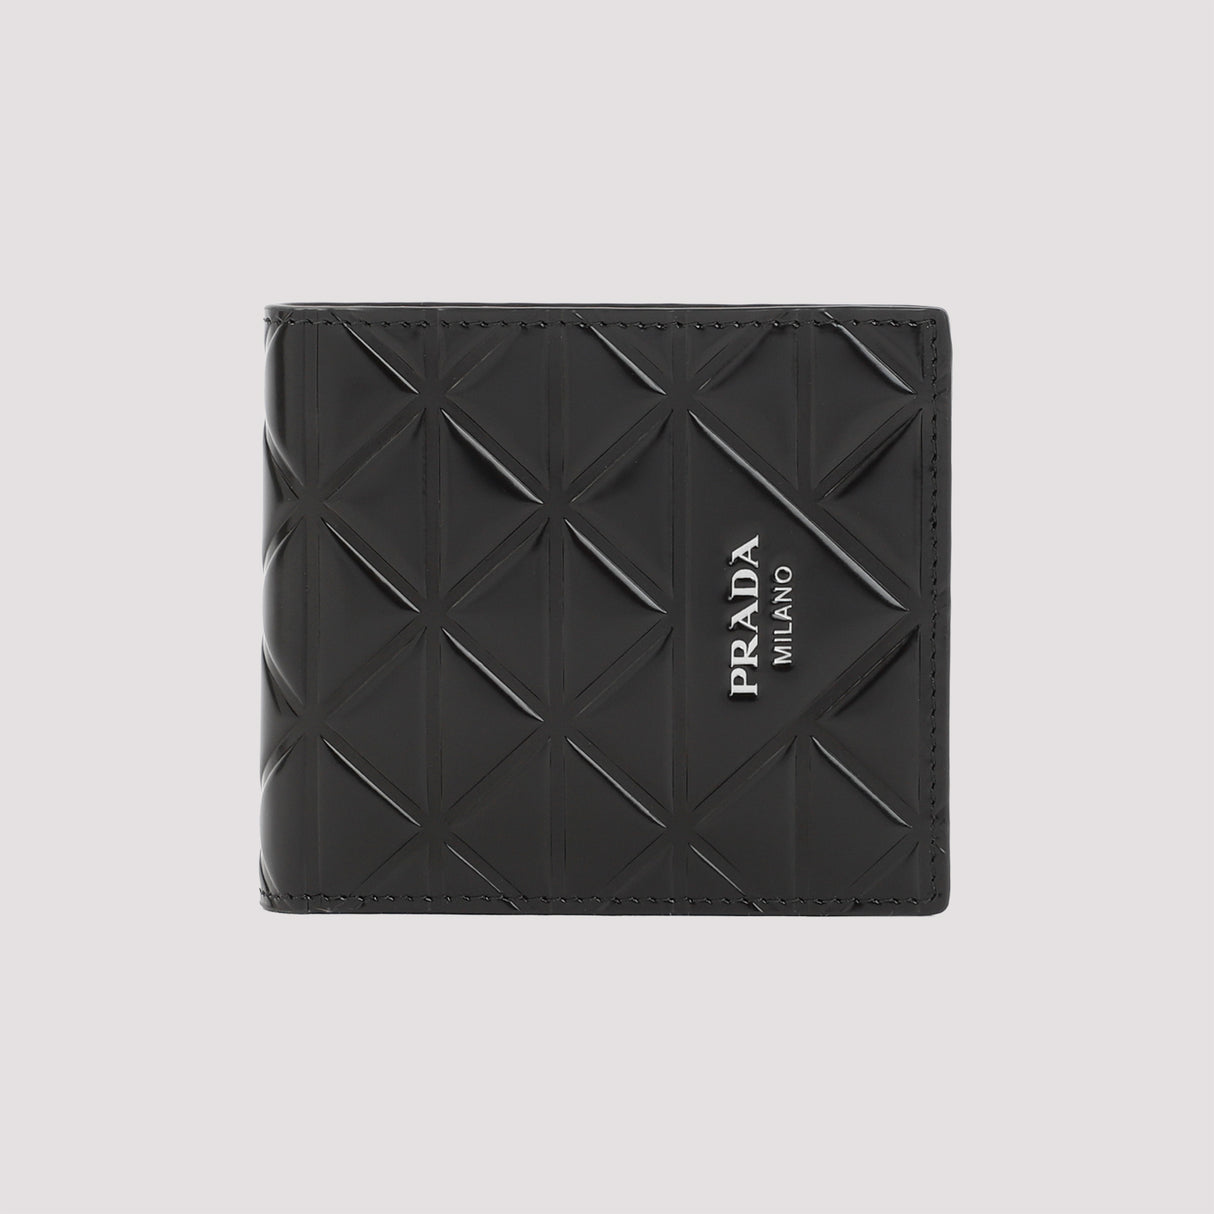 محفظة رجالية أفقية بلون أسود وتصميم مثلثي